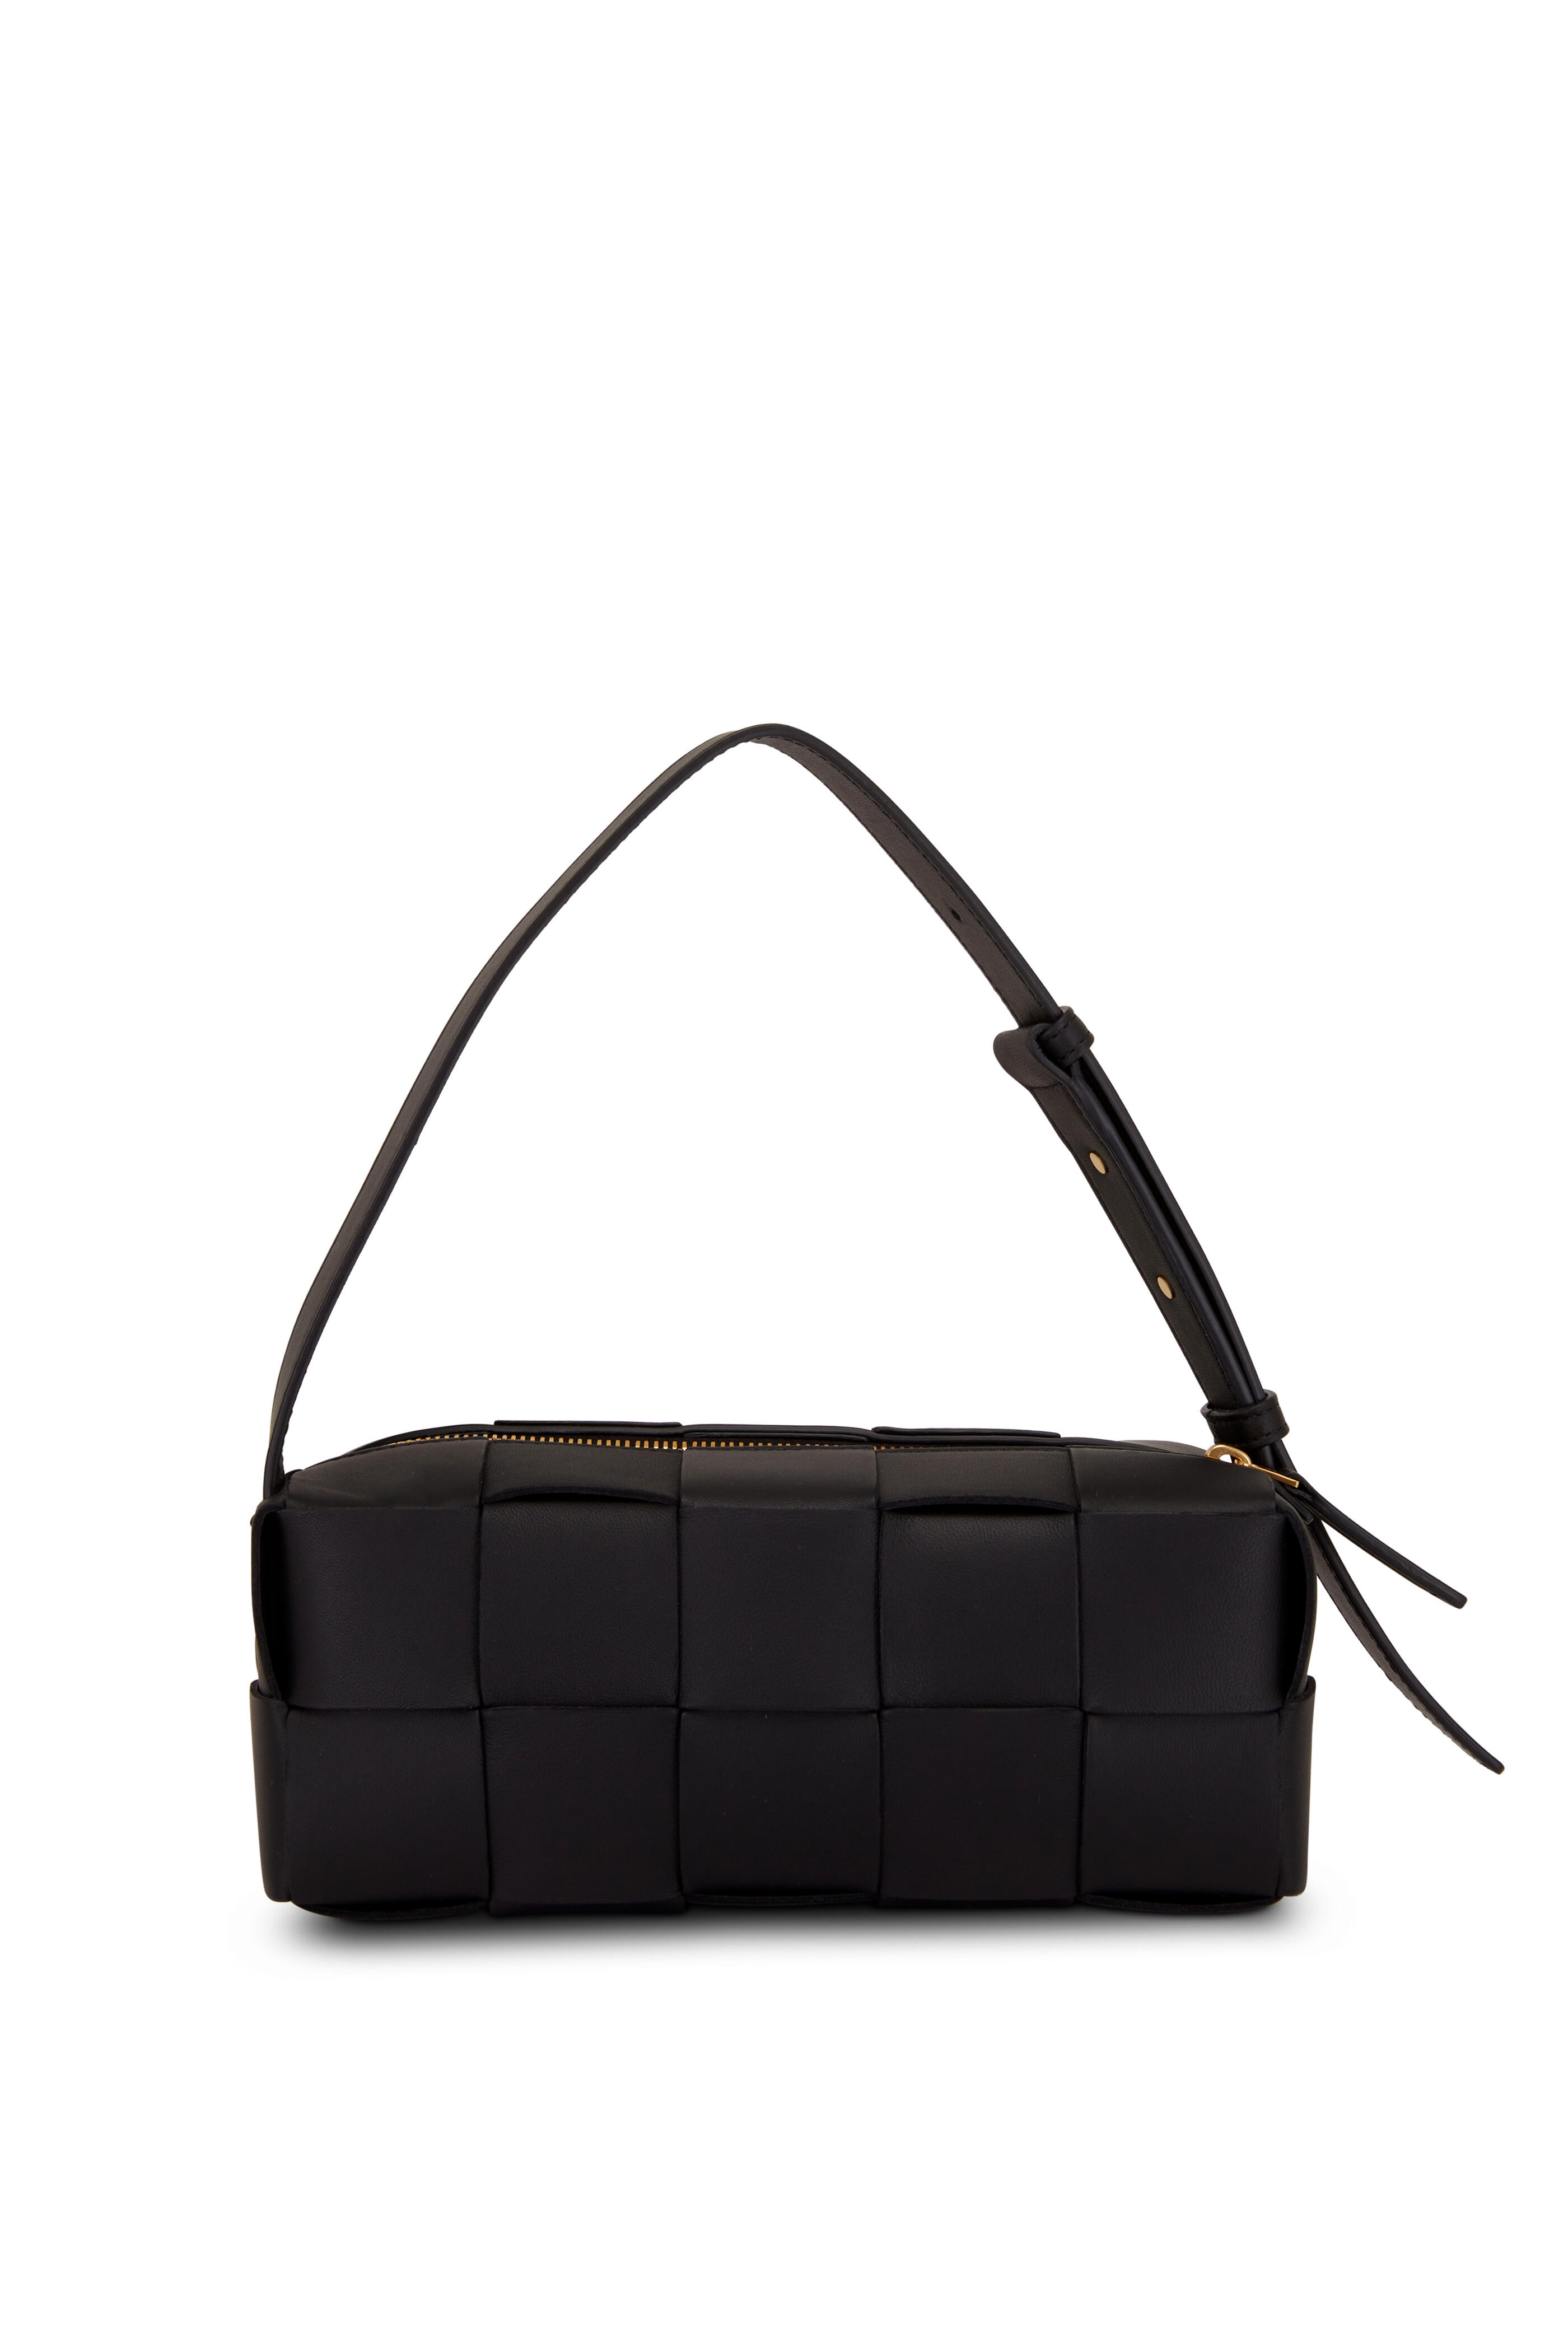 Bottega Veneta - Brick Cassette Black Woven Leather Shoulder Bag